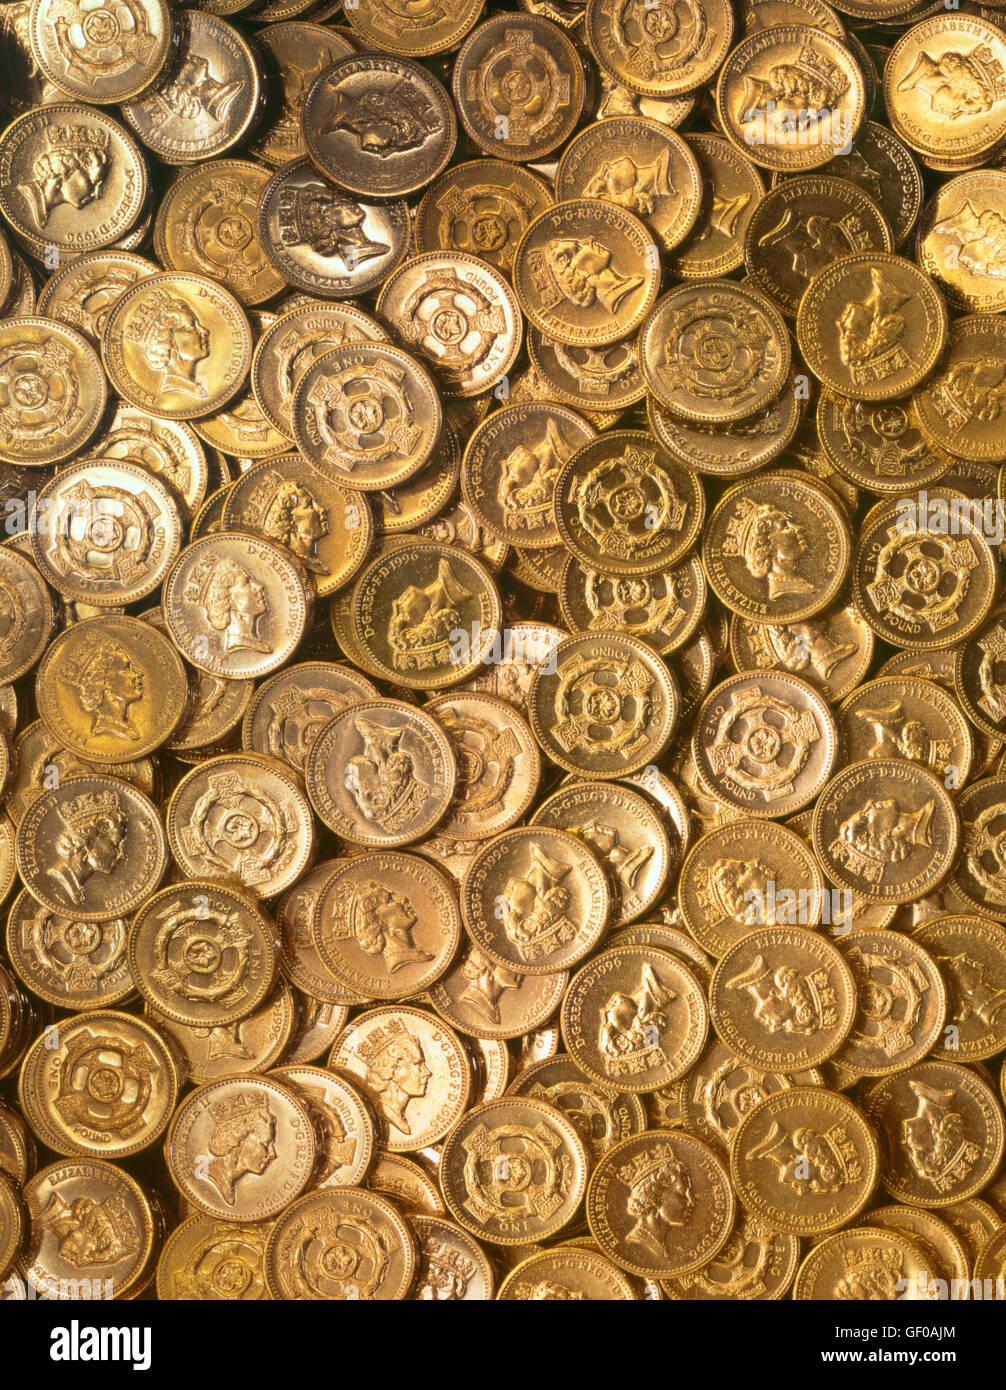 Viele Pfund-Münzen aufeinander gestapelt Stockfoto